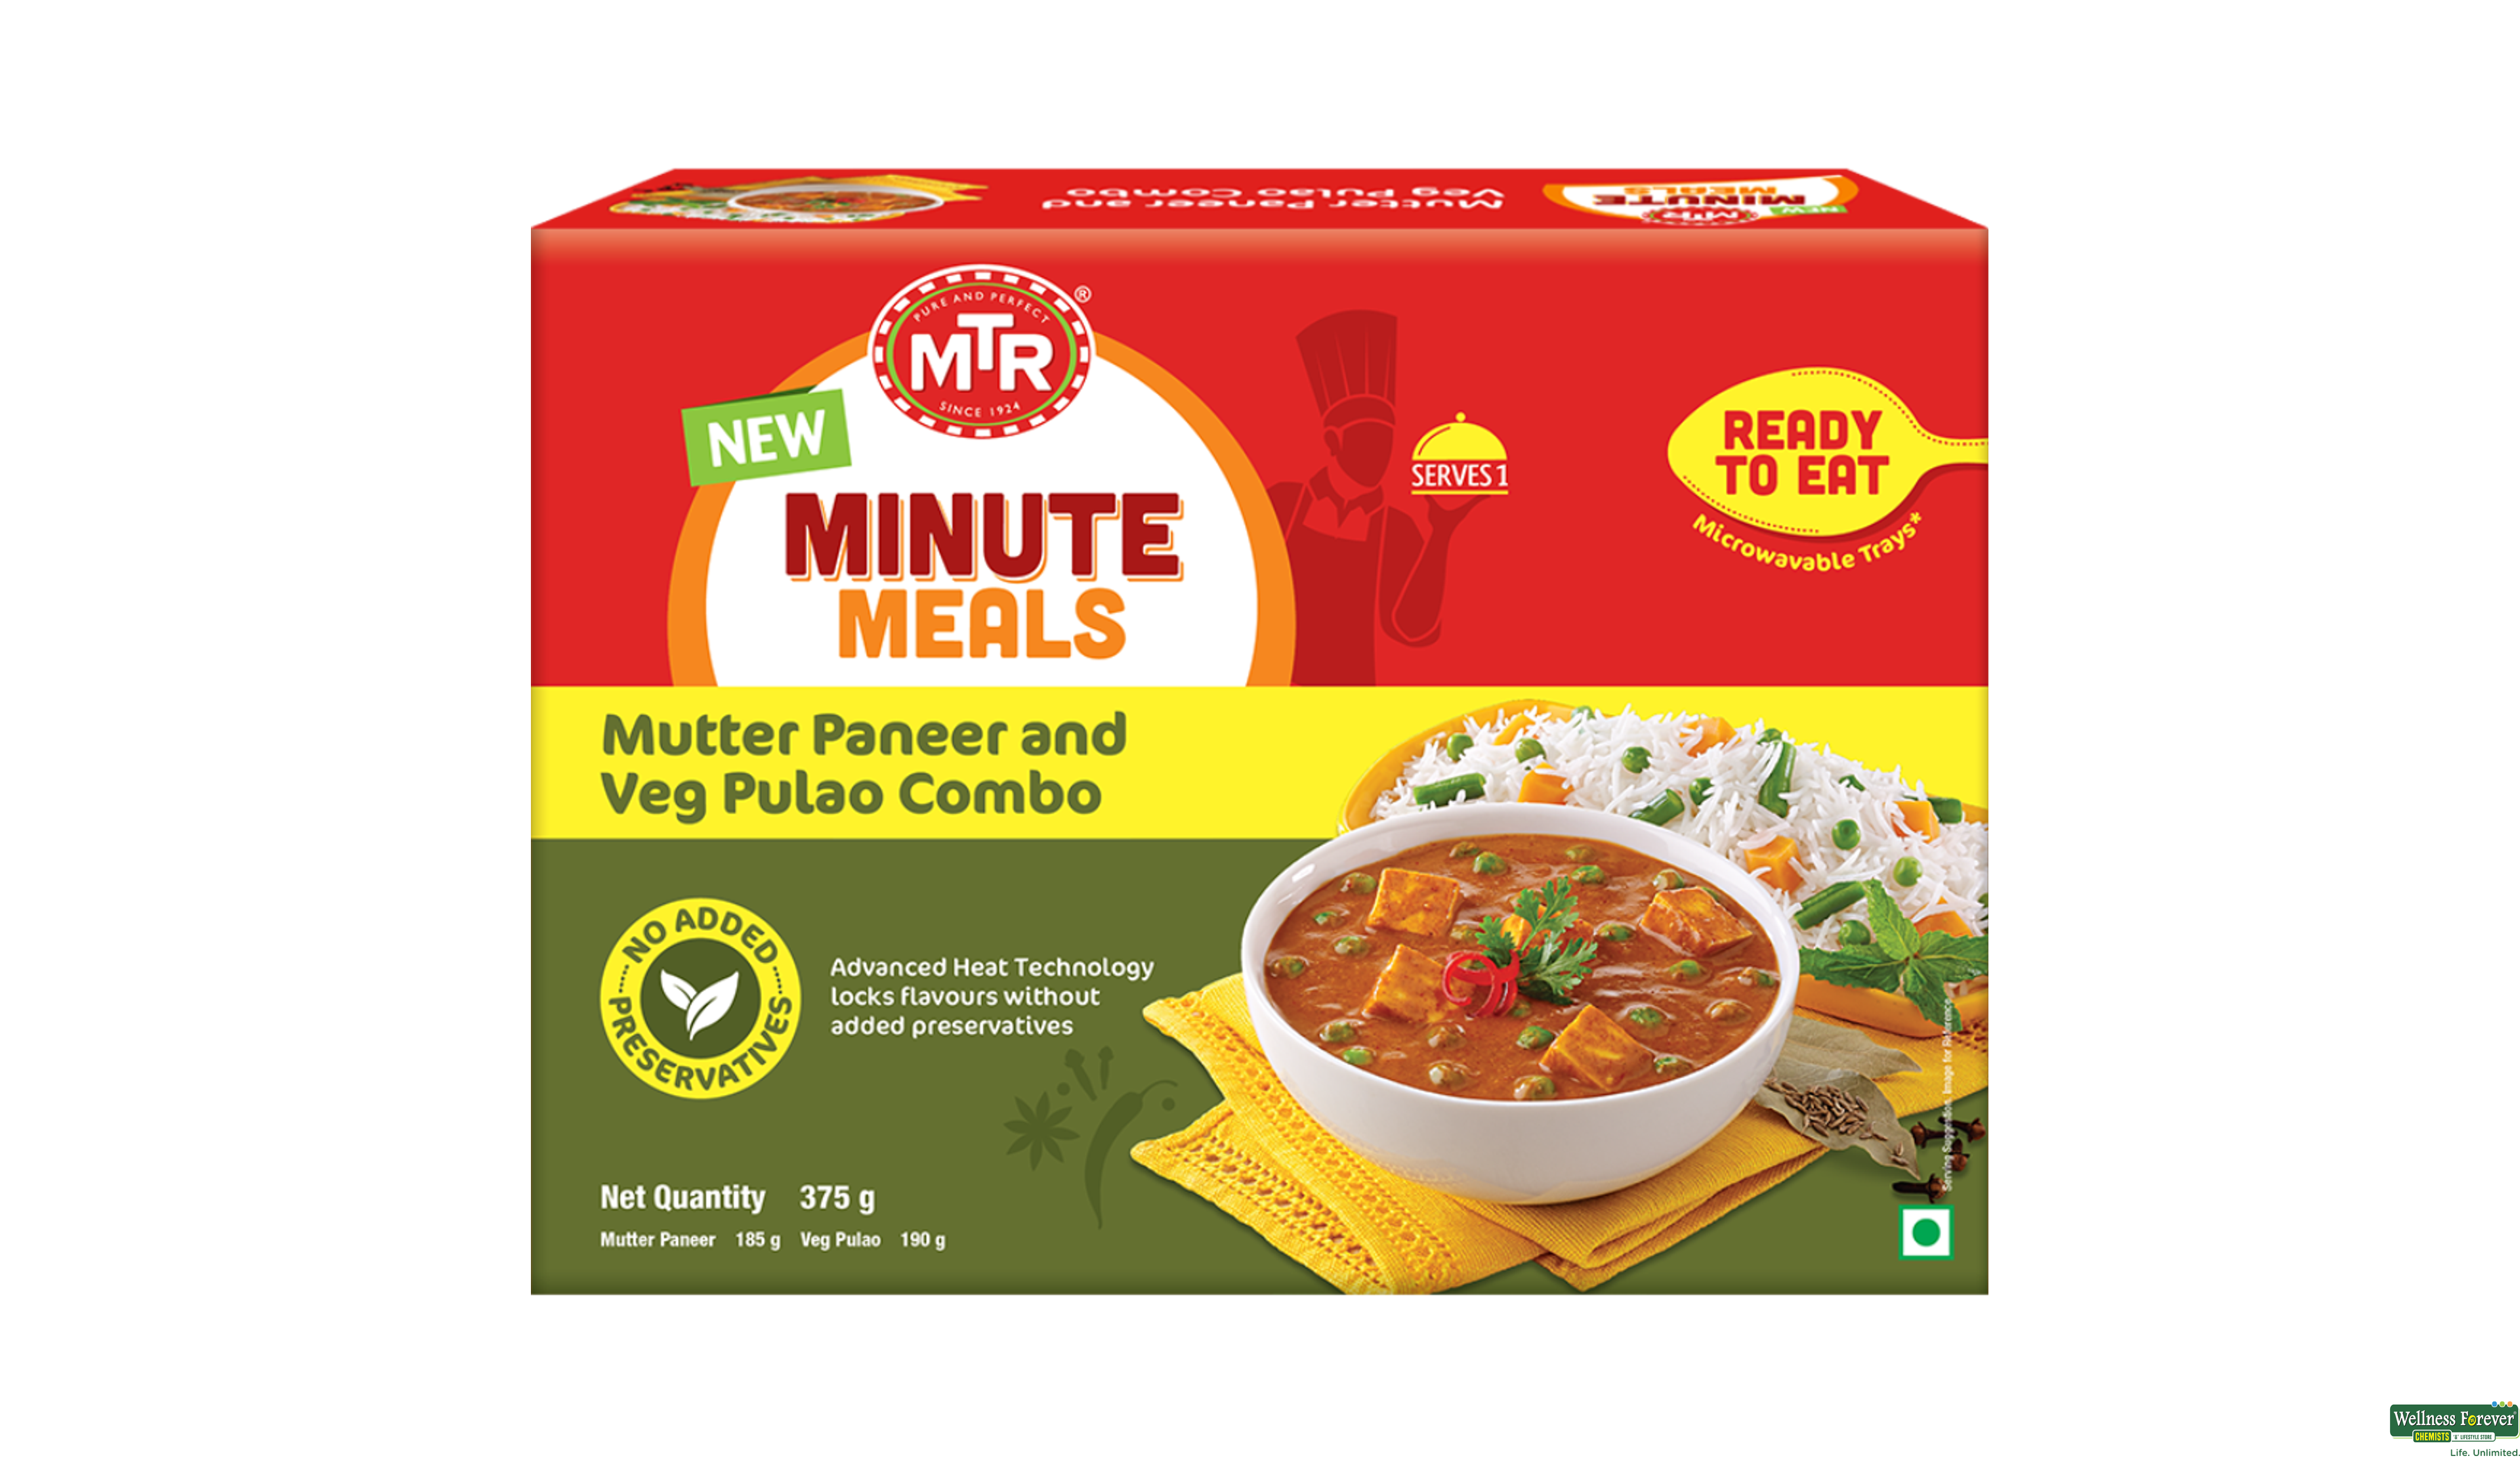 MTR MINUTE MEALS MUTTER PANEER & VEG PULAO COMBO 375GM- 1, 375GM, 